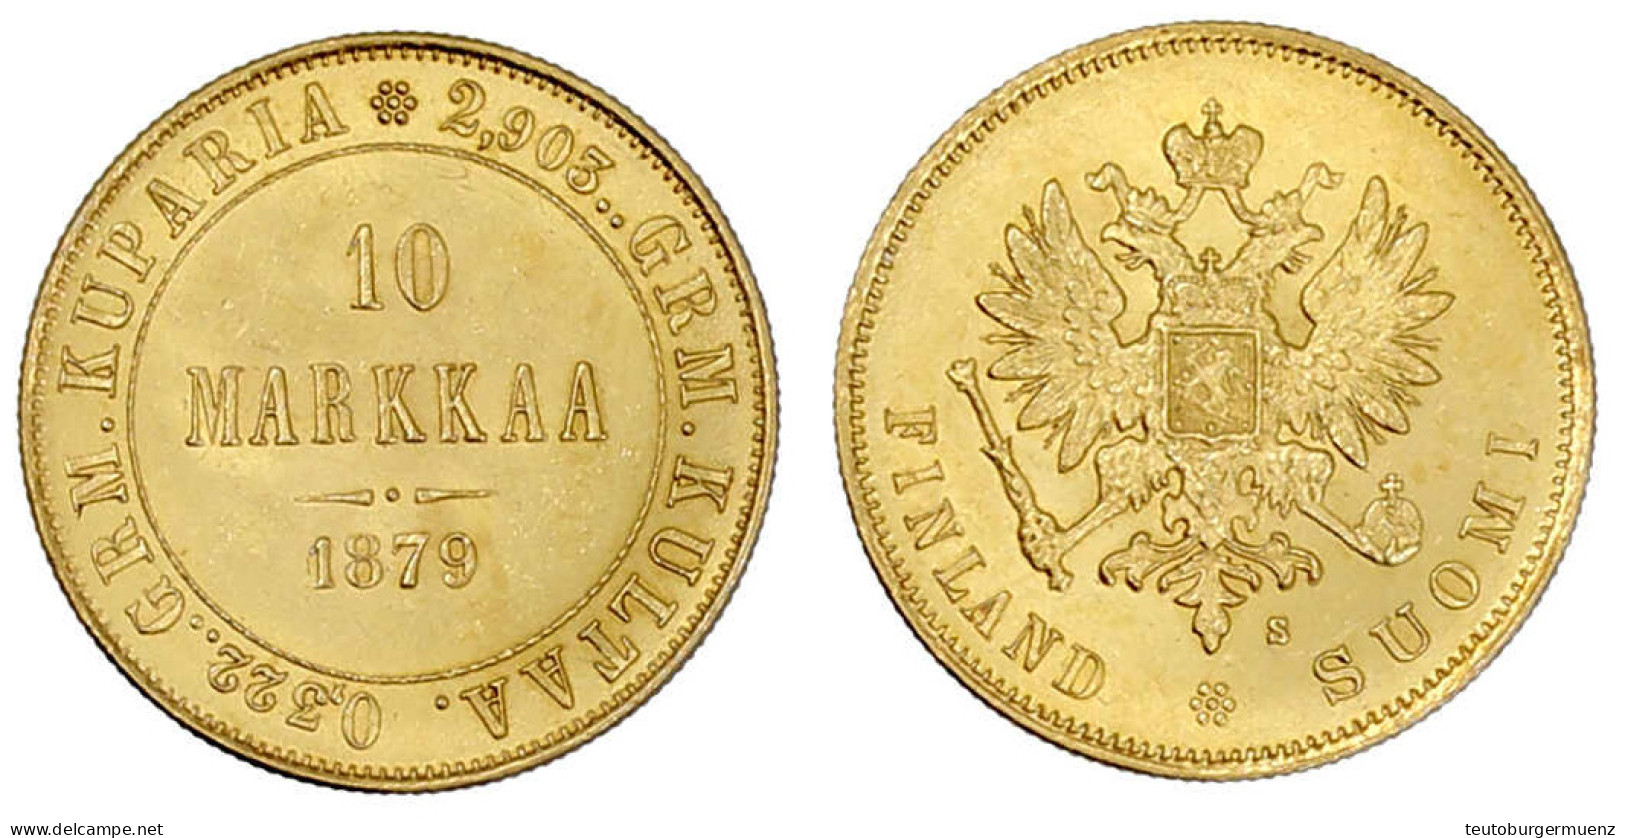 10 Markkaa 1879. 3,23 G. 900/1000. Vorzüglich/Stempelglanz. Bitkin 615. Krause/Mishler 8.1. - Finlandia